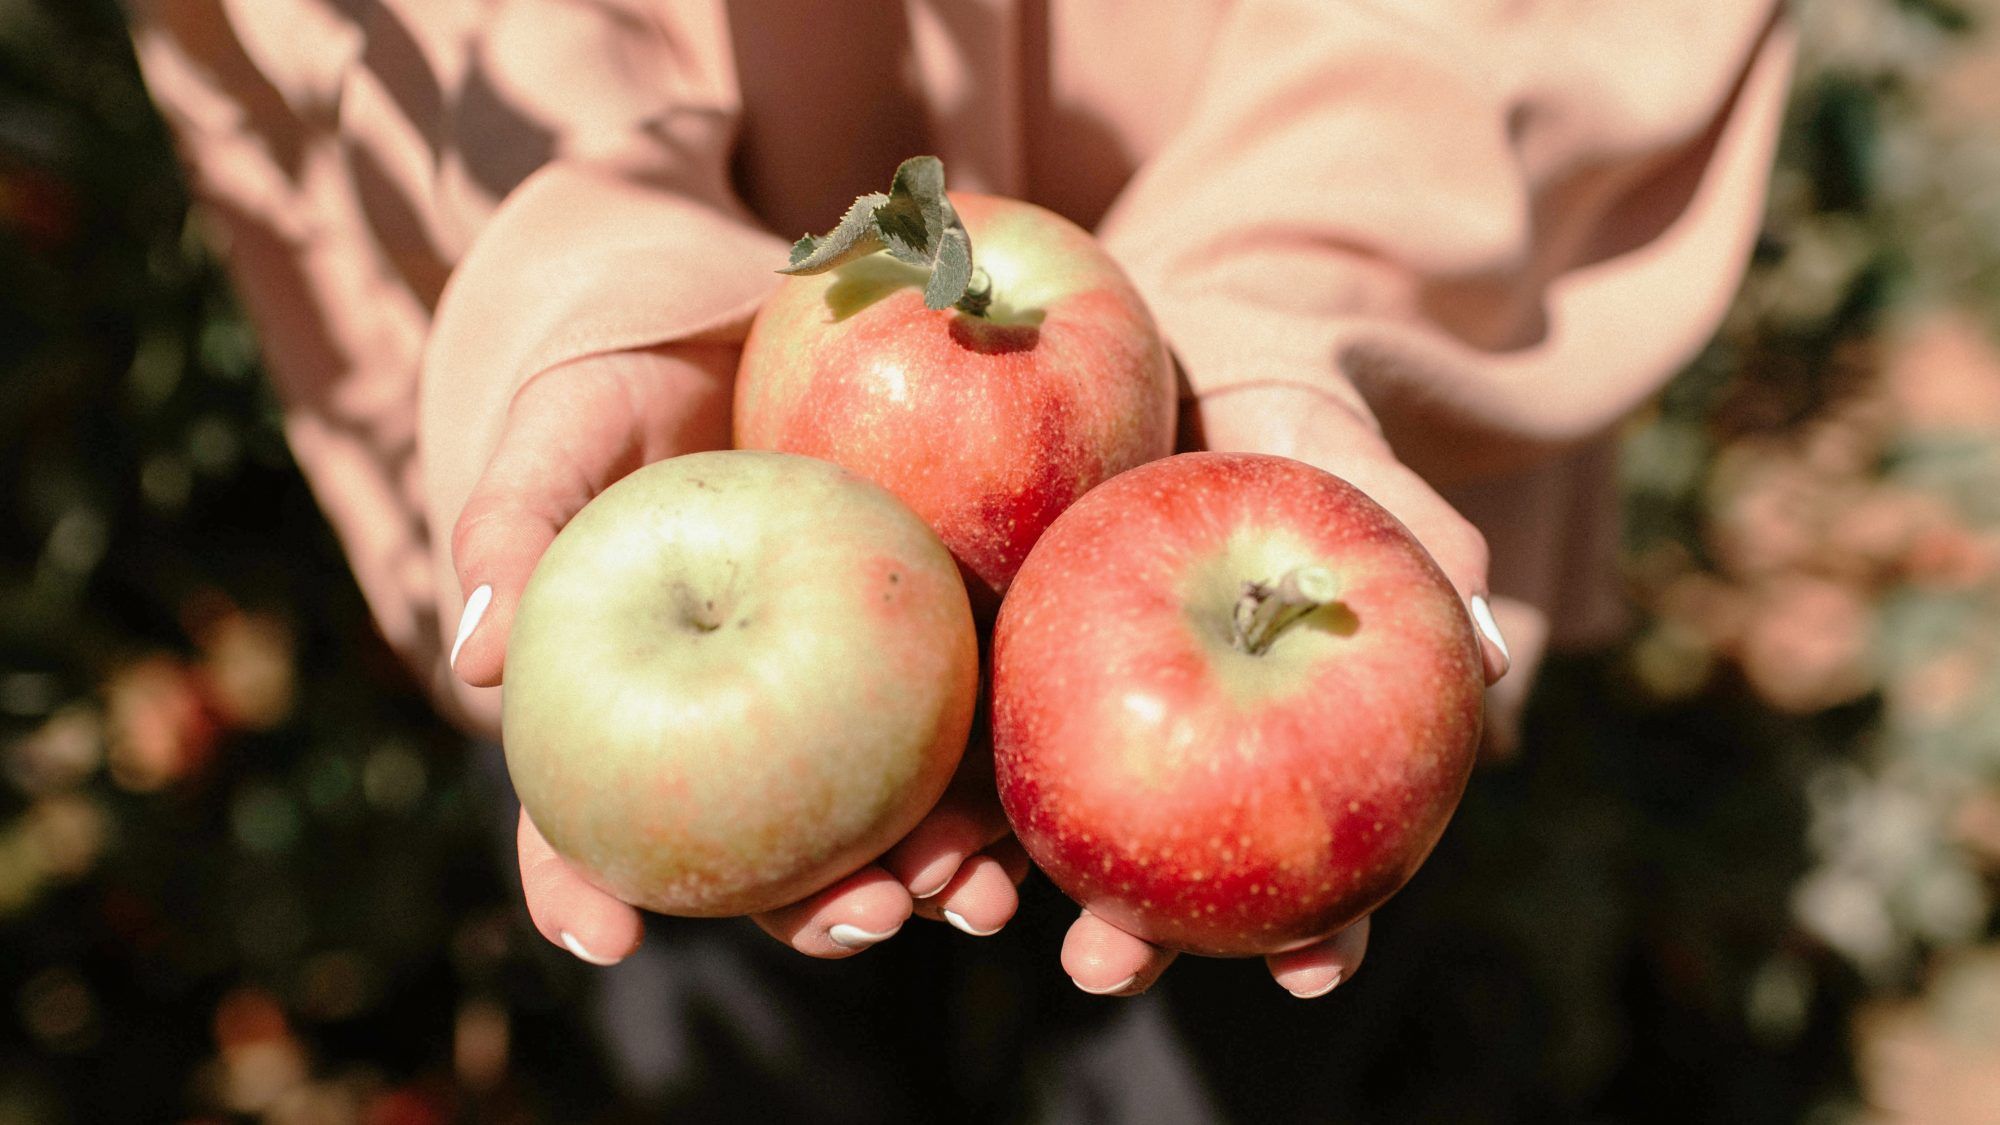 Yelp'ten Elma Toplama Gidilecek En İyi 50 Yer: sonbaharda elma tutan kadın